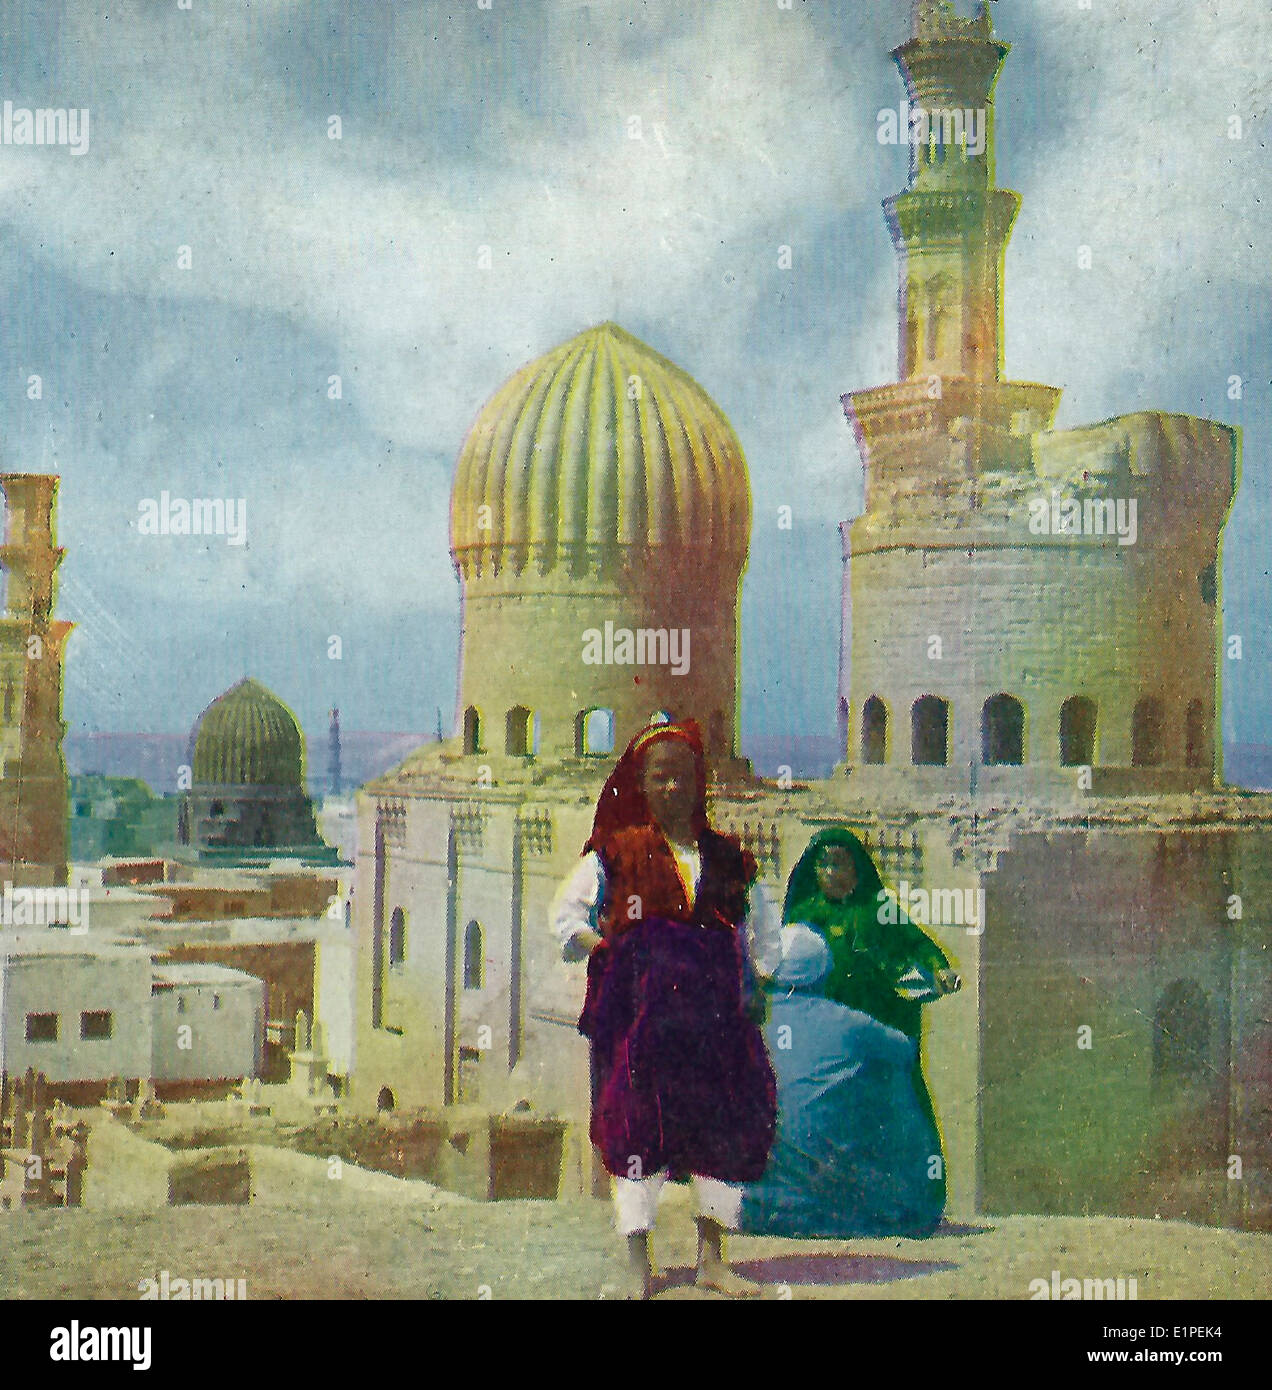 Les anciennes mosquées et tombeaux des Mamelouks, Le Caire, Égypte, vers 1900 Banque D'Images